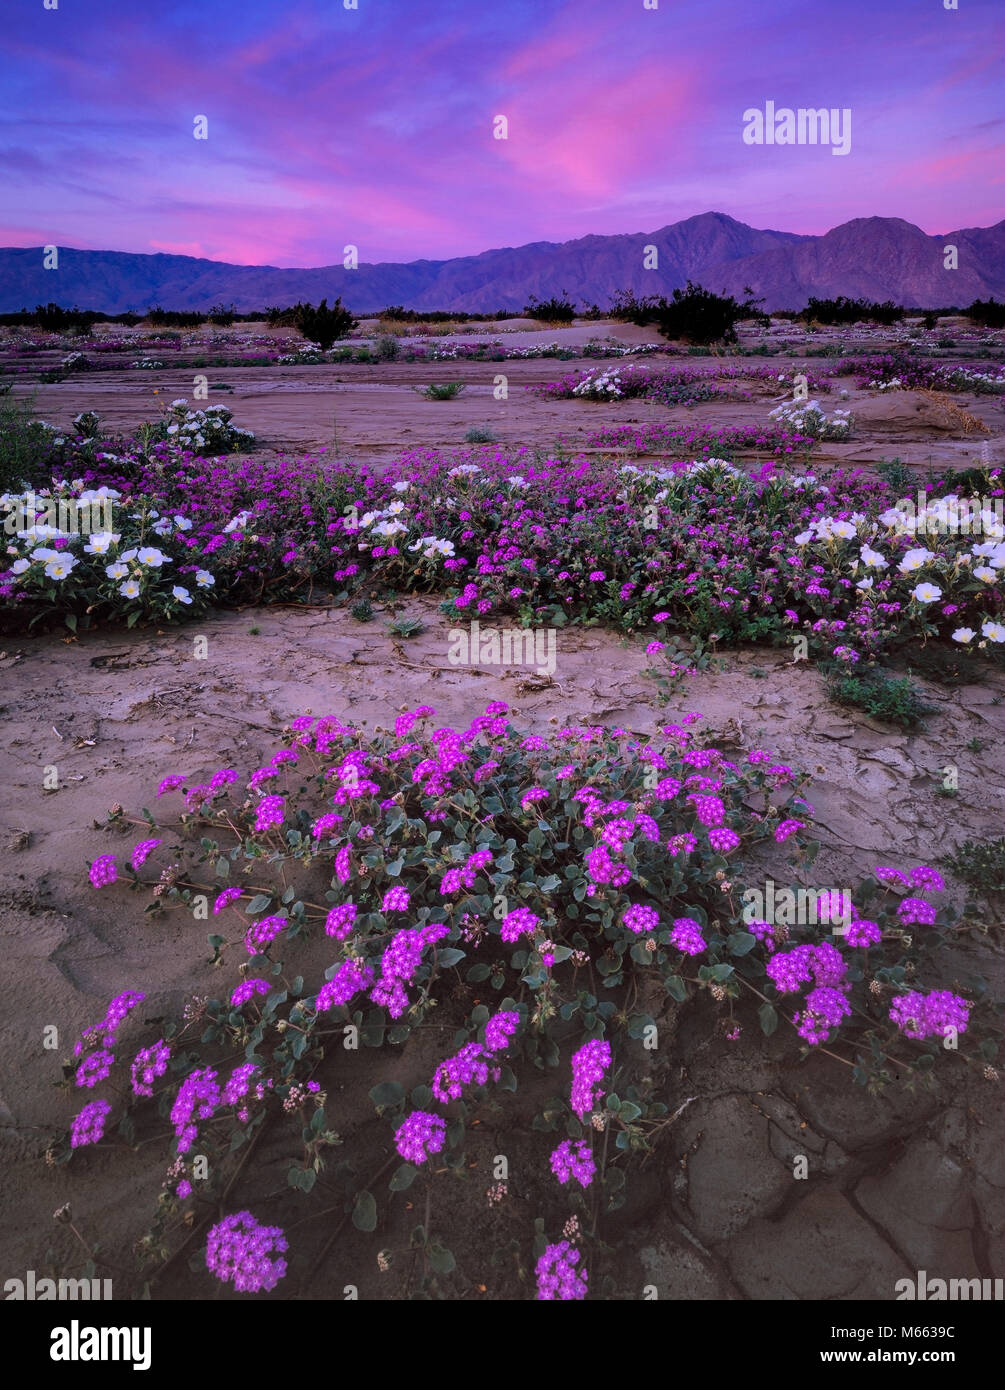 L'aube, de la verveine, Anza-Borrego Desert State Park, San Diego County, Californie Banque D'Images